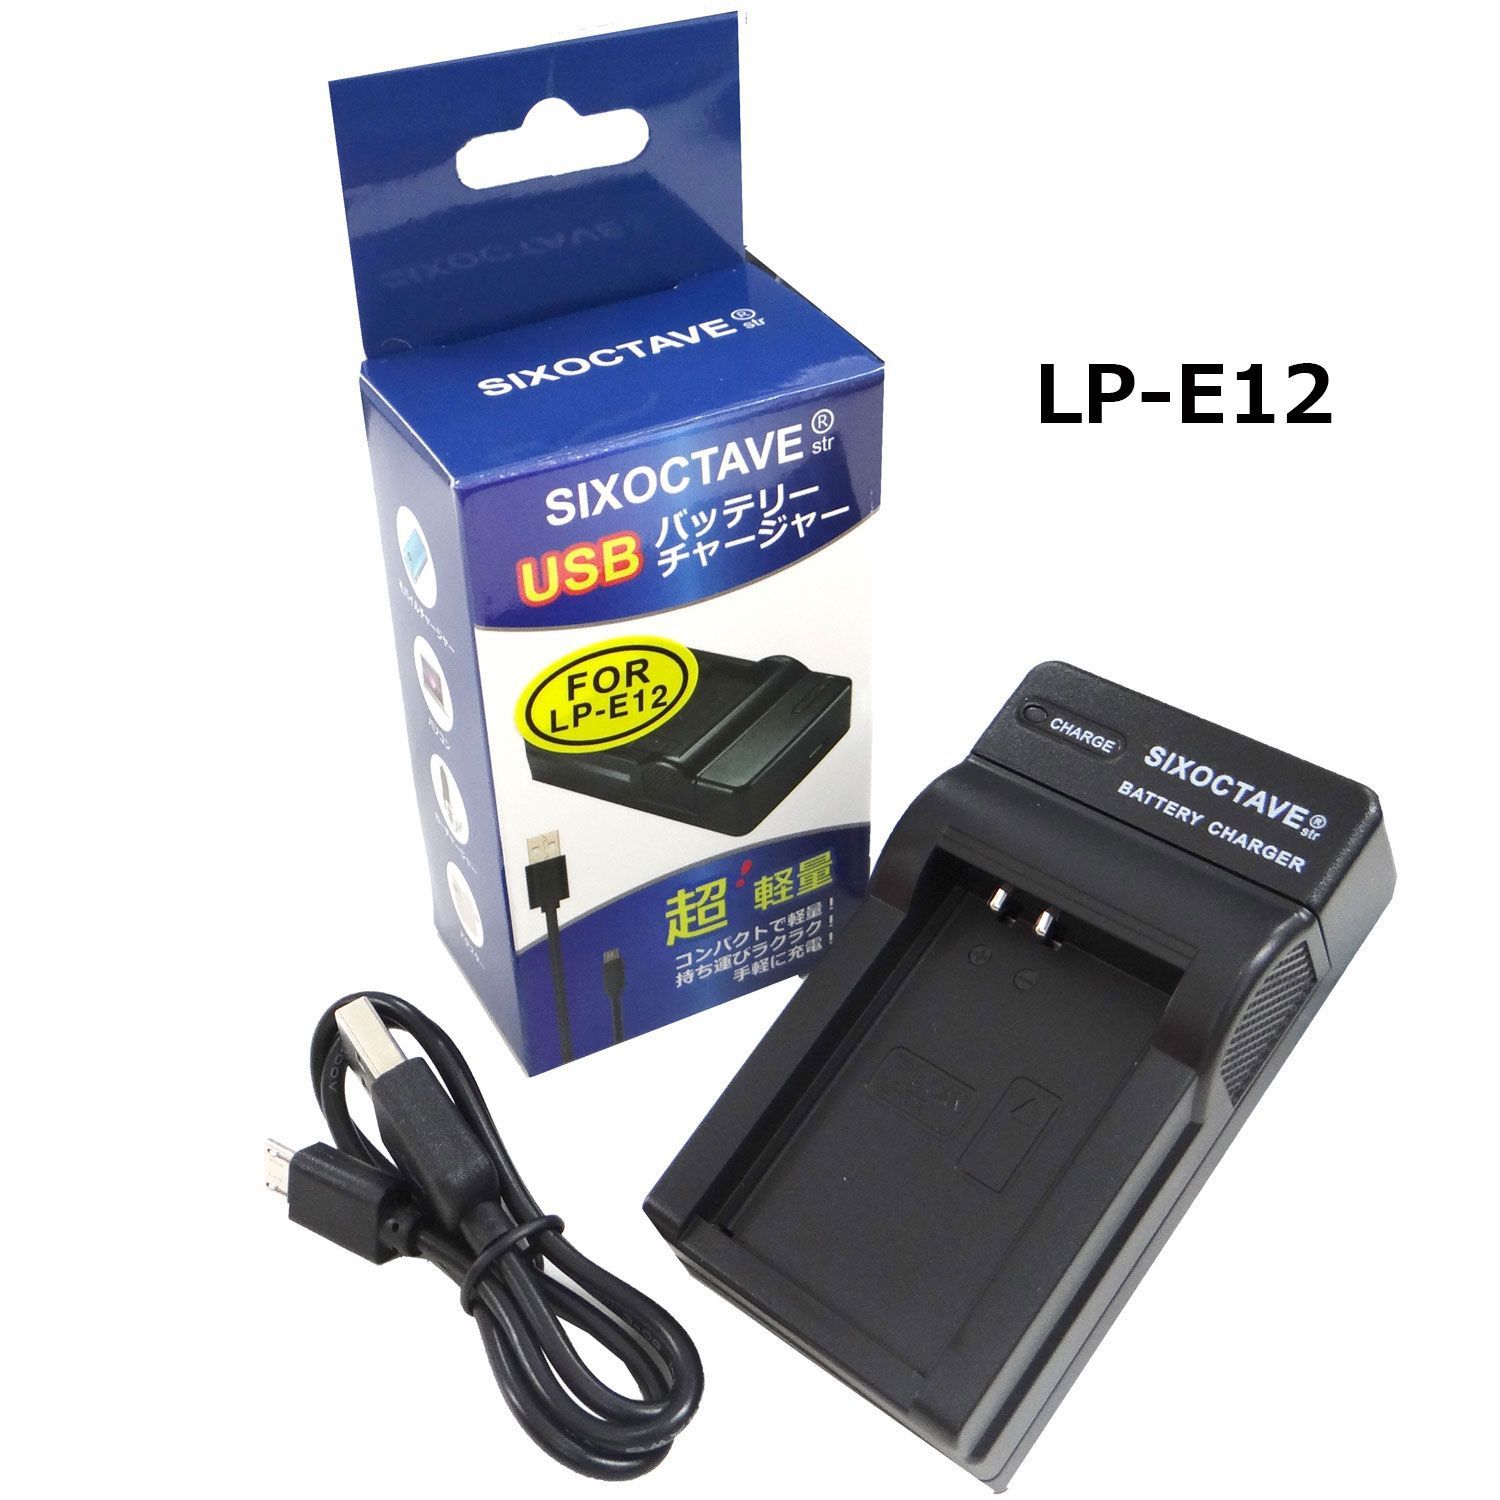 キャノン LC-E12 / LP-E12 SIXOCTAVE 互換USB充電器 - メルカリ